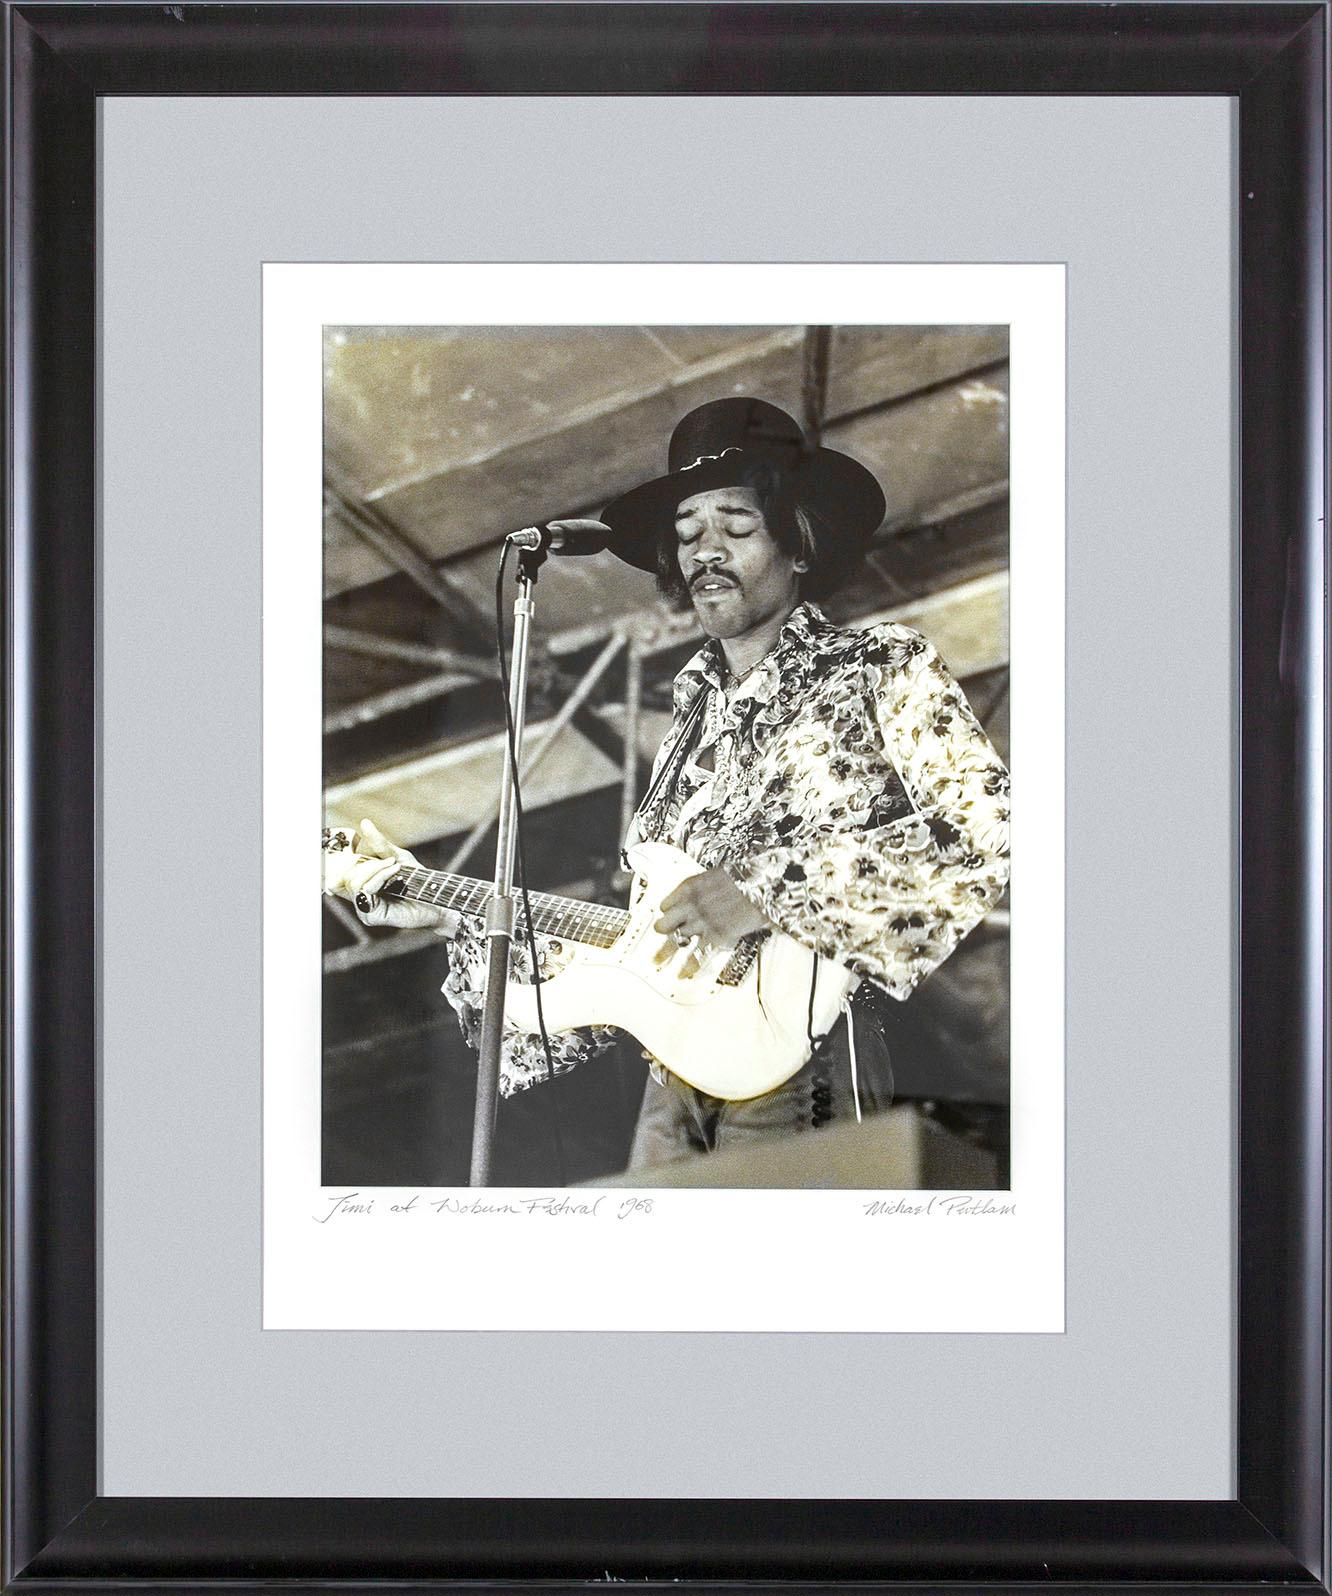 "Jimi at Woburn Festival 1968" photographie encadrée en noir et blanc de Michael Putland représentant Jimi Hendrix lors du festival de musique de Woburn en Angleterre le 6 juillet 1968.  "Jim at Woburn Festival 1968" écrit à la main dans le coin